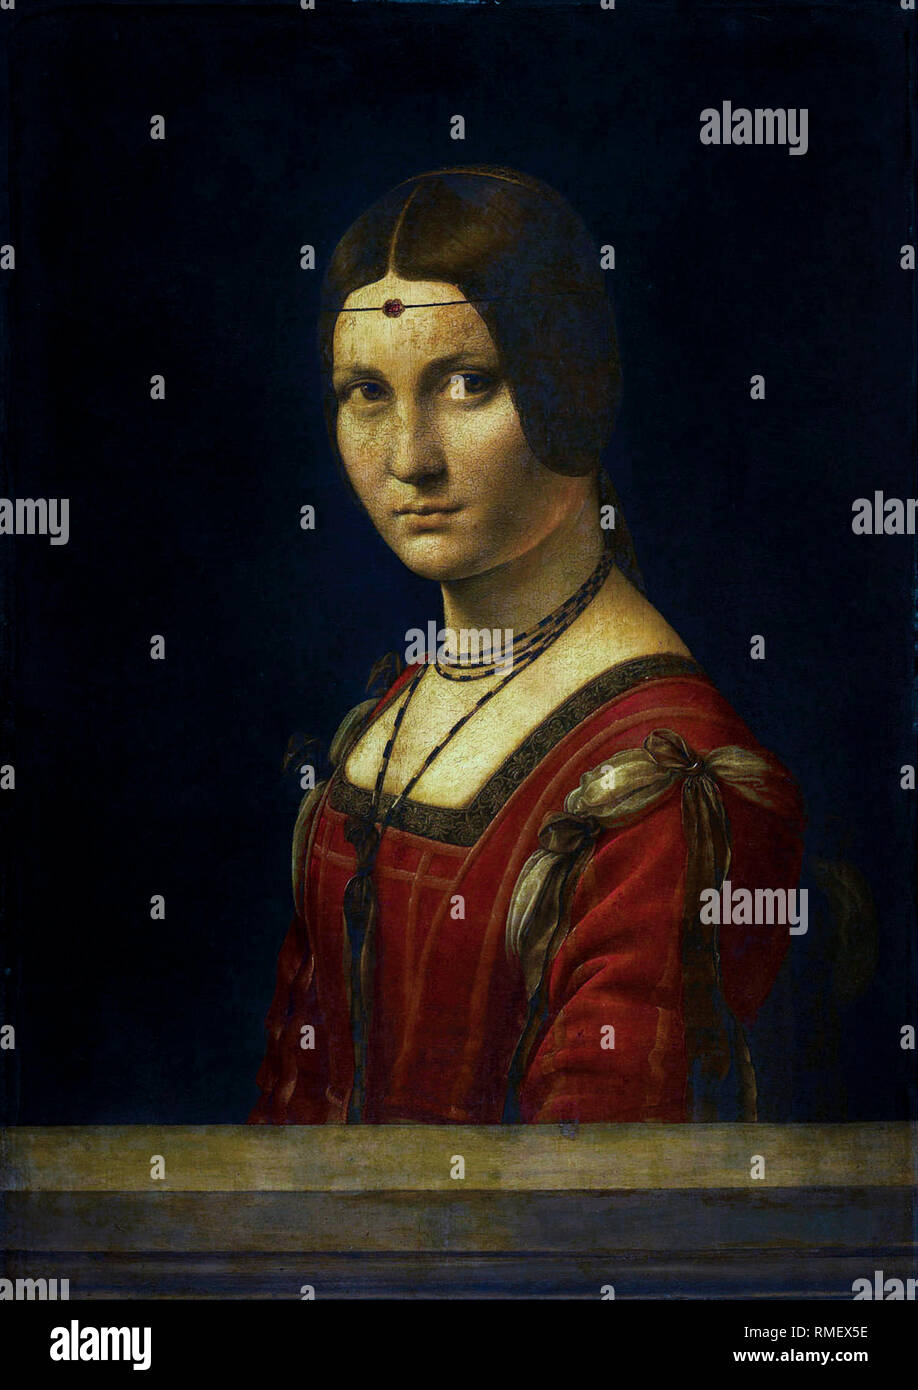 Leonardo da Vinci, Portrait of an Unknown Woman, La Belle Ferronniere, painting circa 1496 Stock Photo